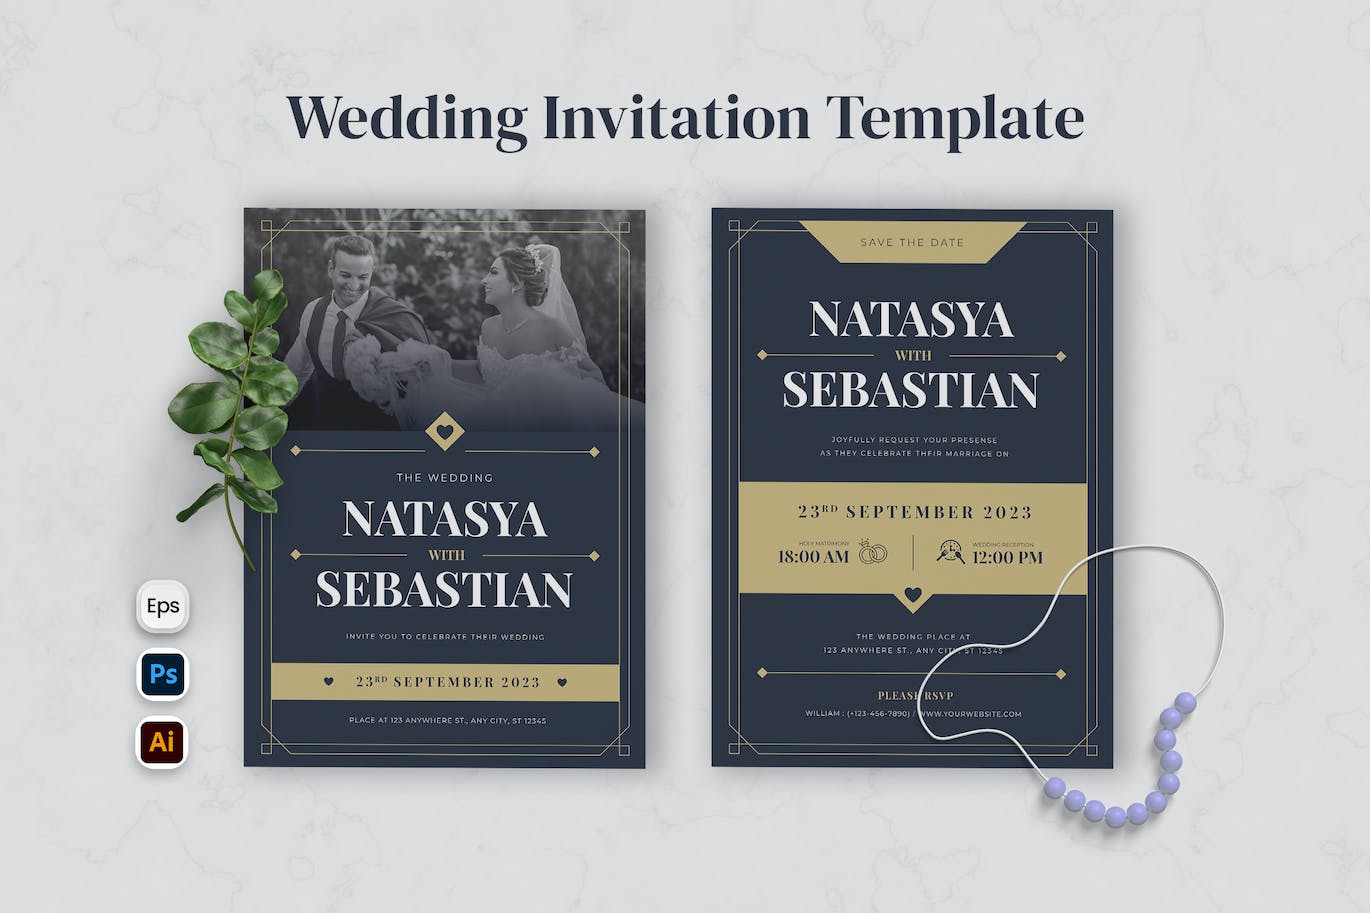 简单优雅婚礼邀请函设计模板 Simple Elegant Wedding Invitation 设计素材 第1张